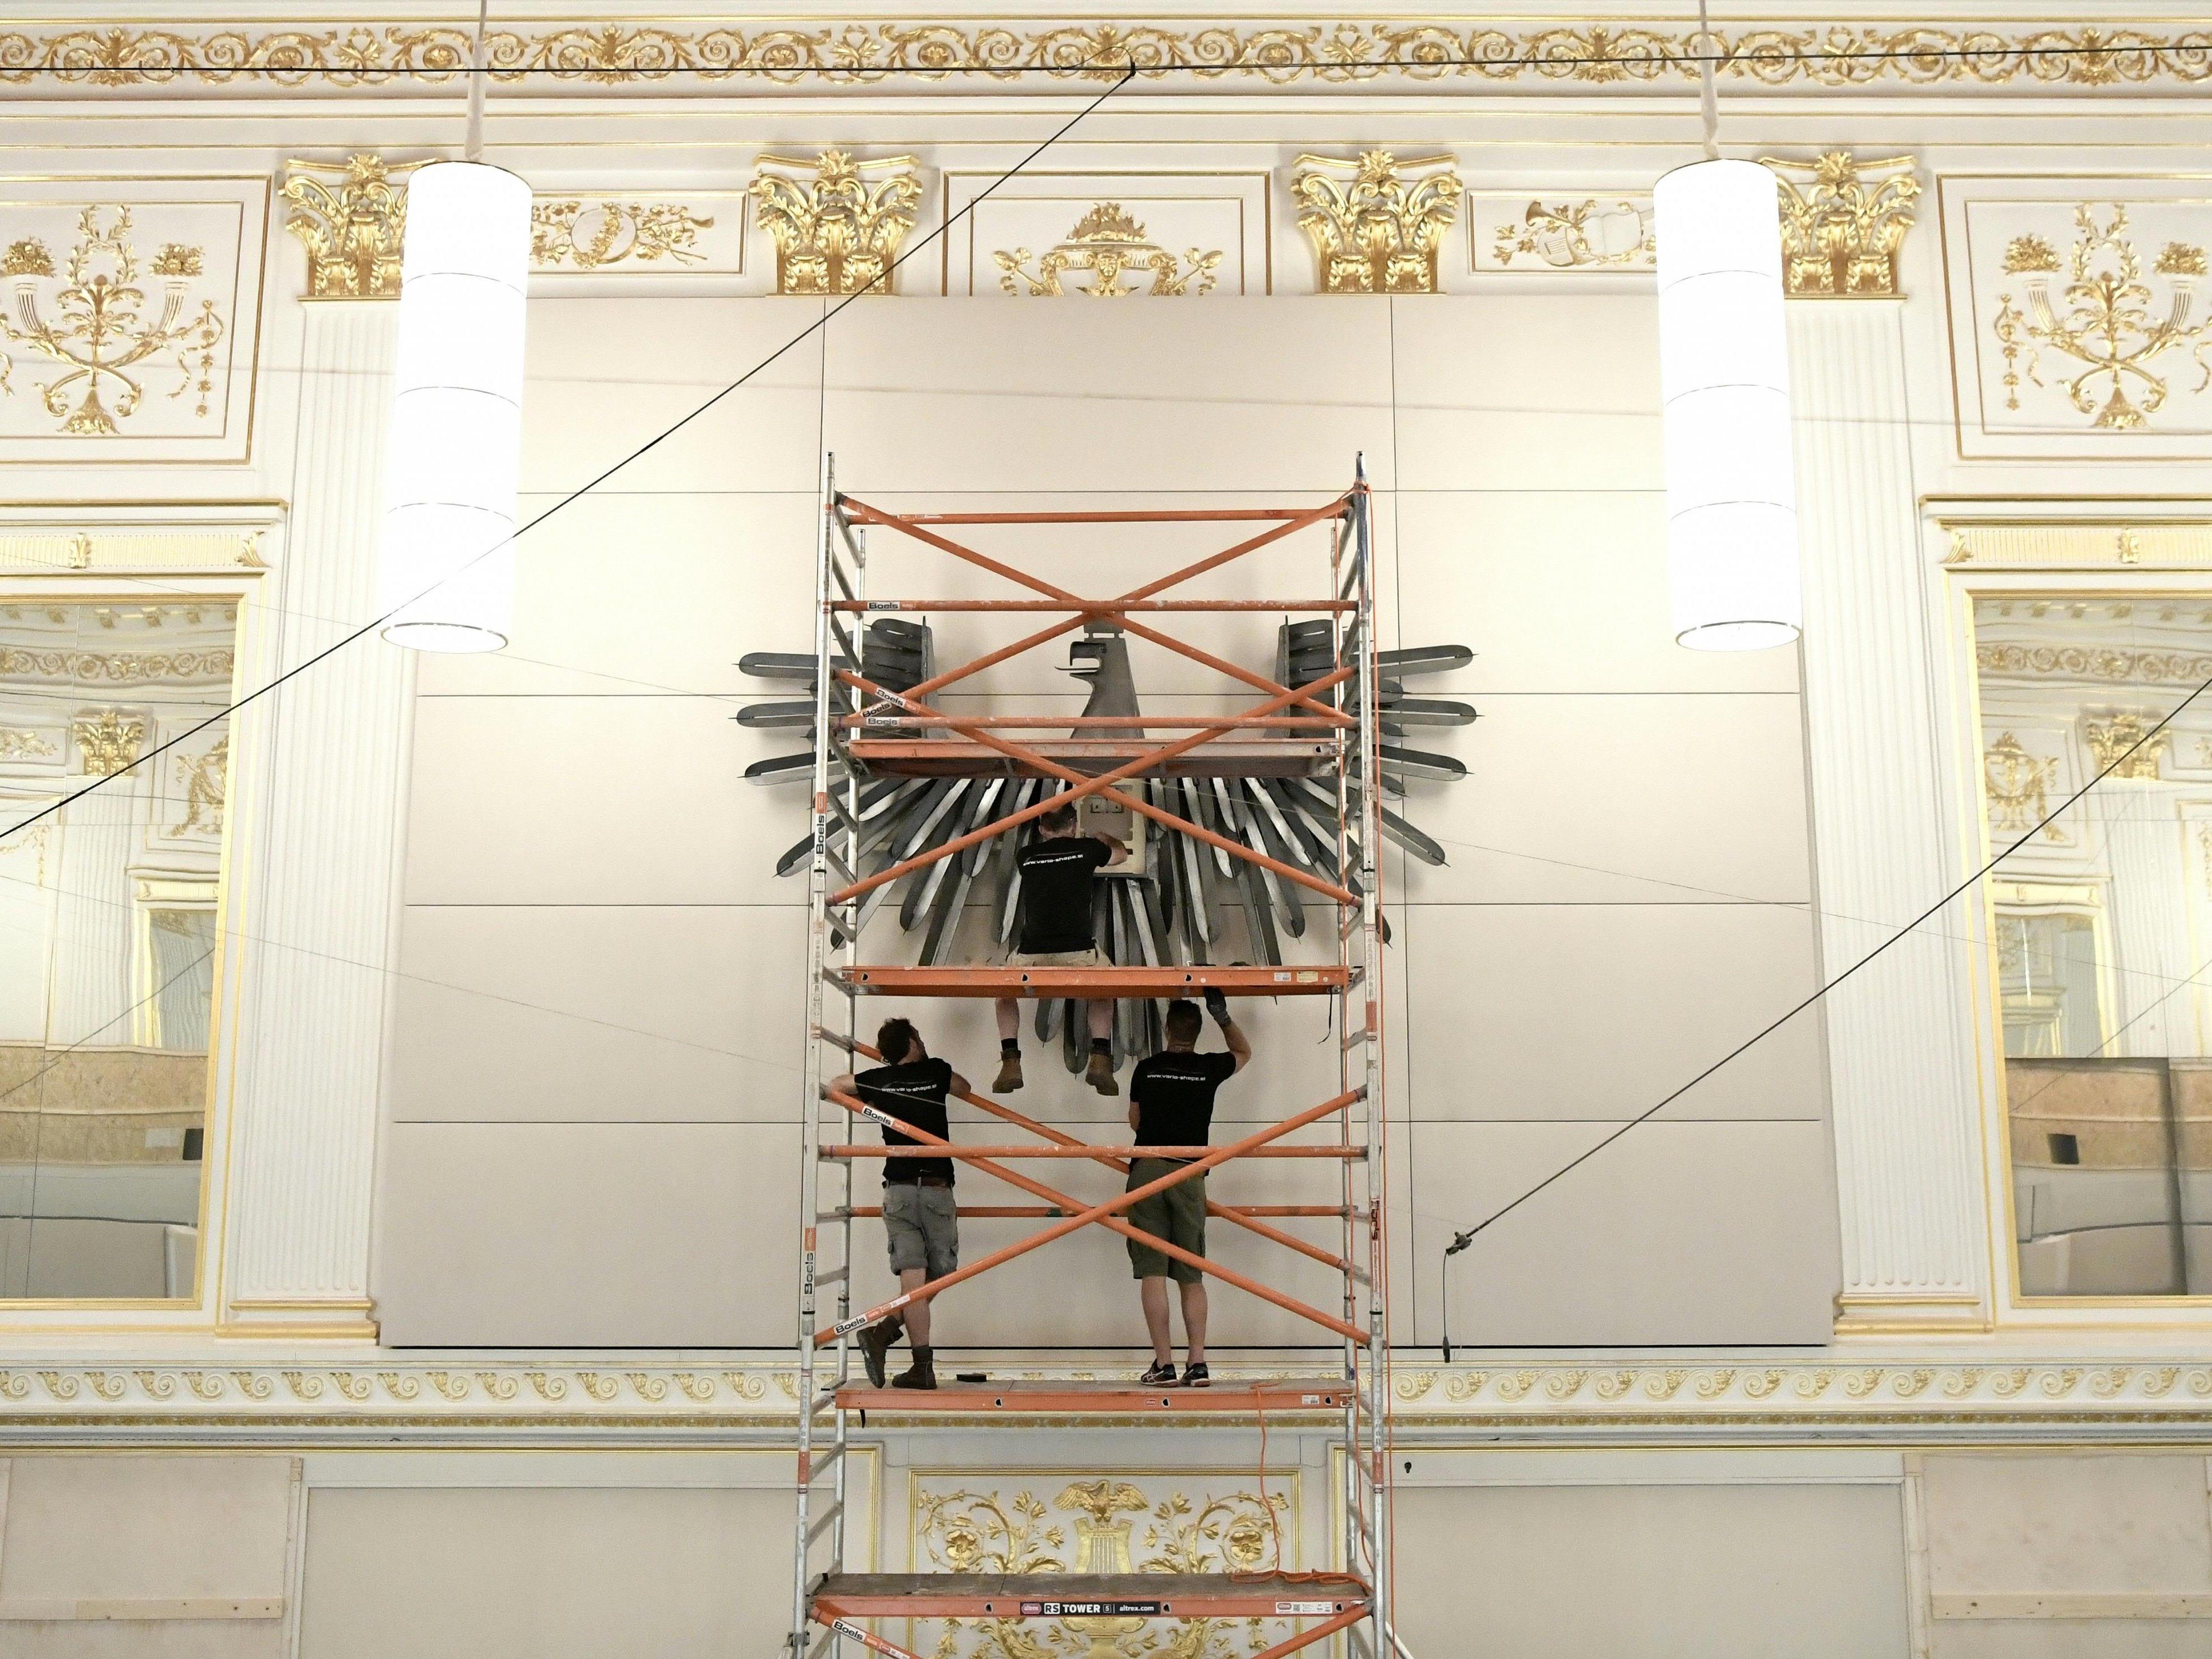 In der Hofburg wurde eine Wappenadler-Kopie montiert